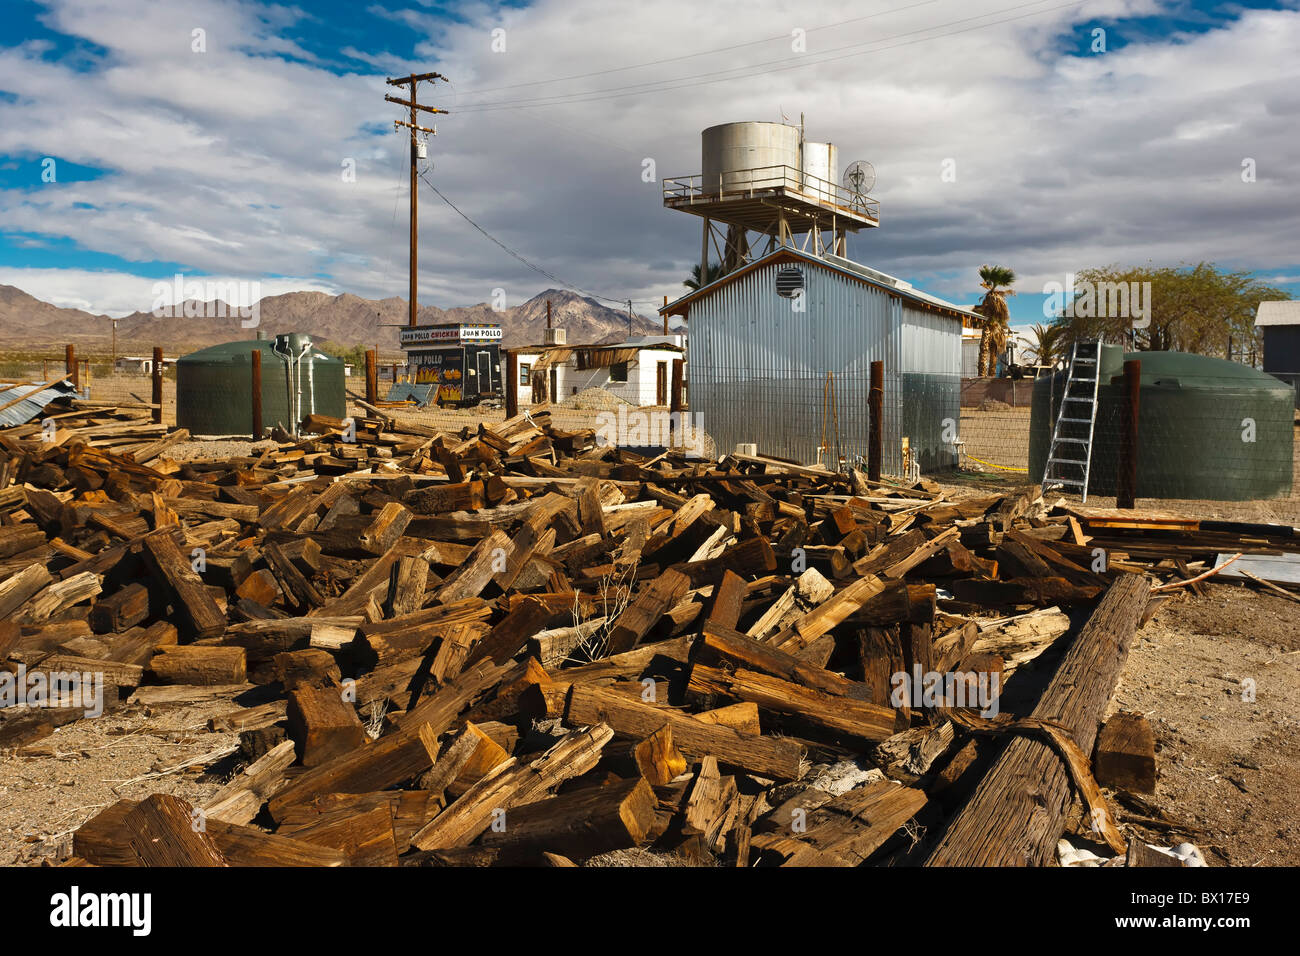 Railroad Ties scrap yard, Amboy, California Stock Photo